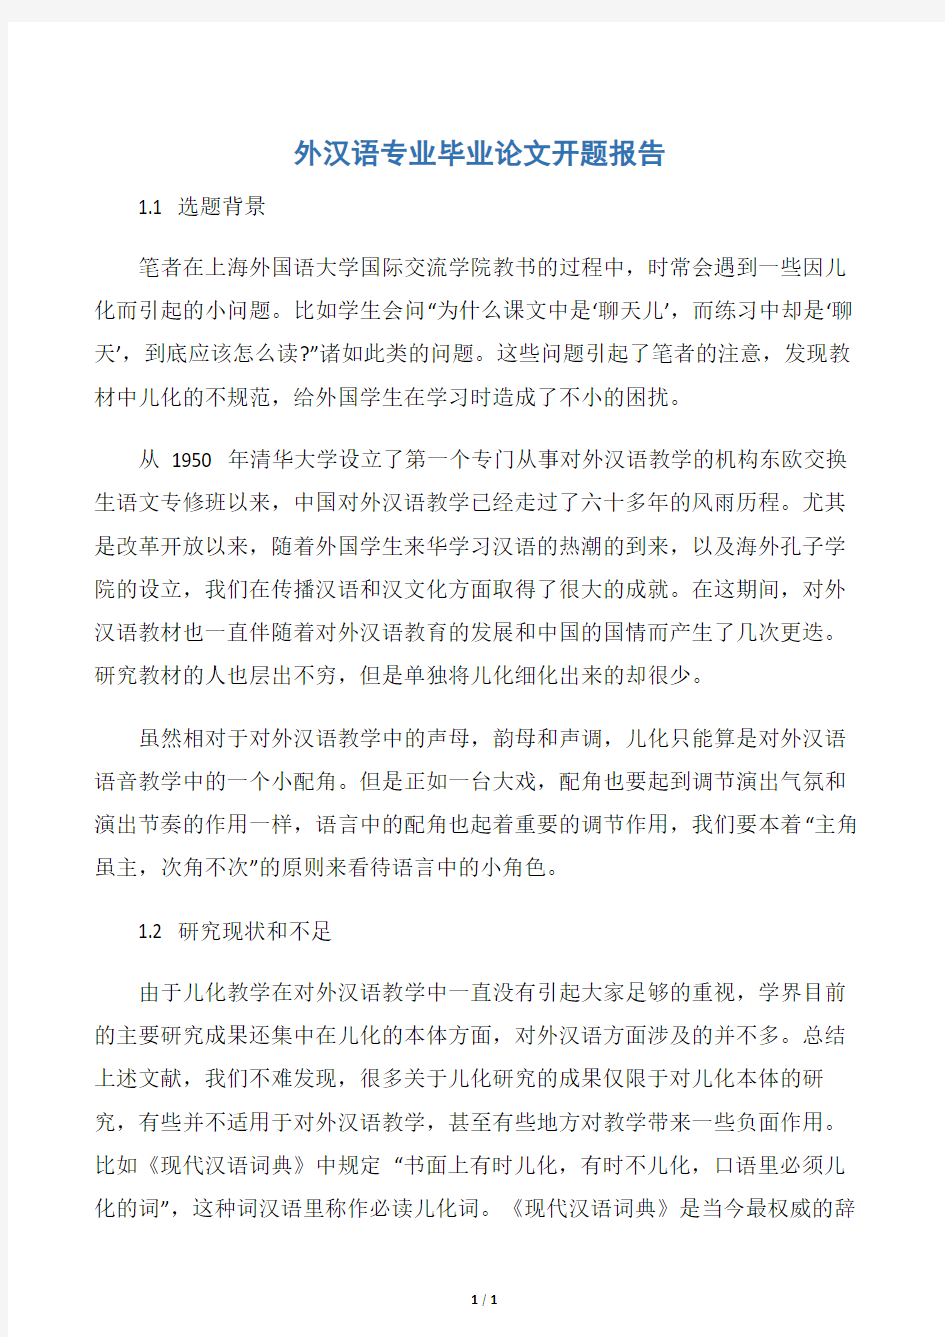 【开题报告】外汉语专业毕业论文开题报告